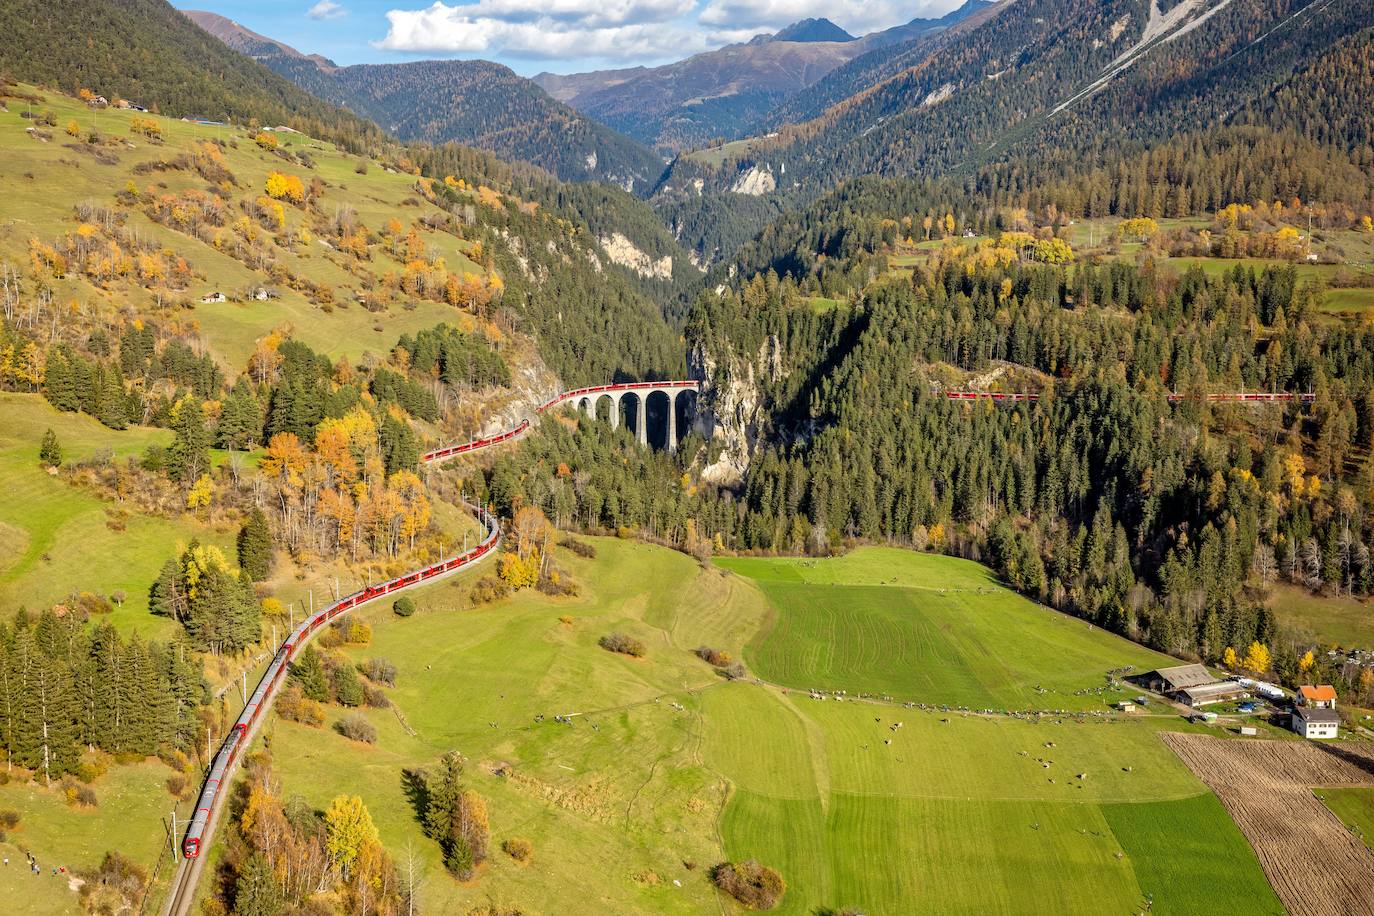 El viaducto más grande en la ruta del récord mundial es el mundialmente famoso Viaducto Landwasser, justo después Filisur, con una longitud de 142 metros y una altura de 65 metros.